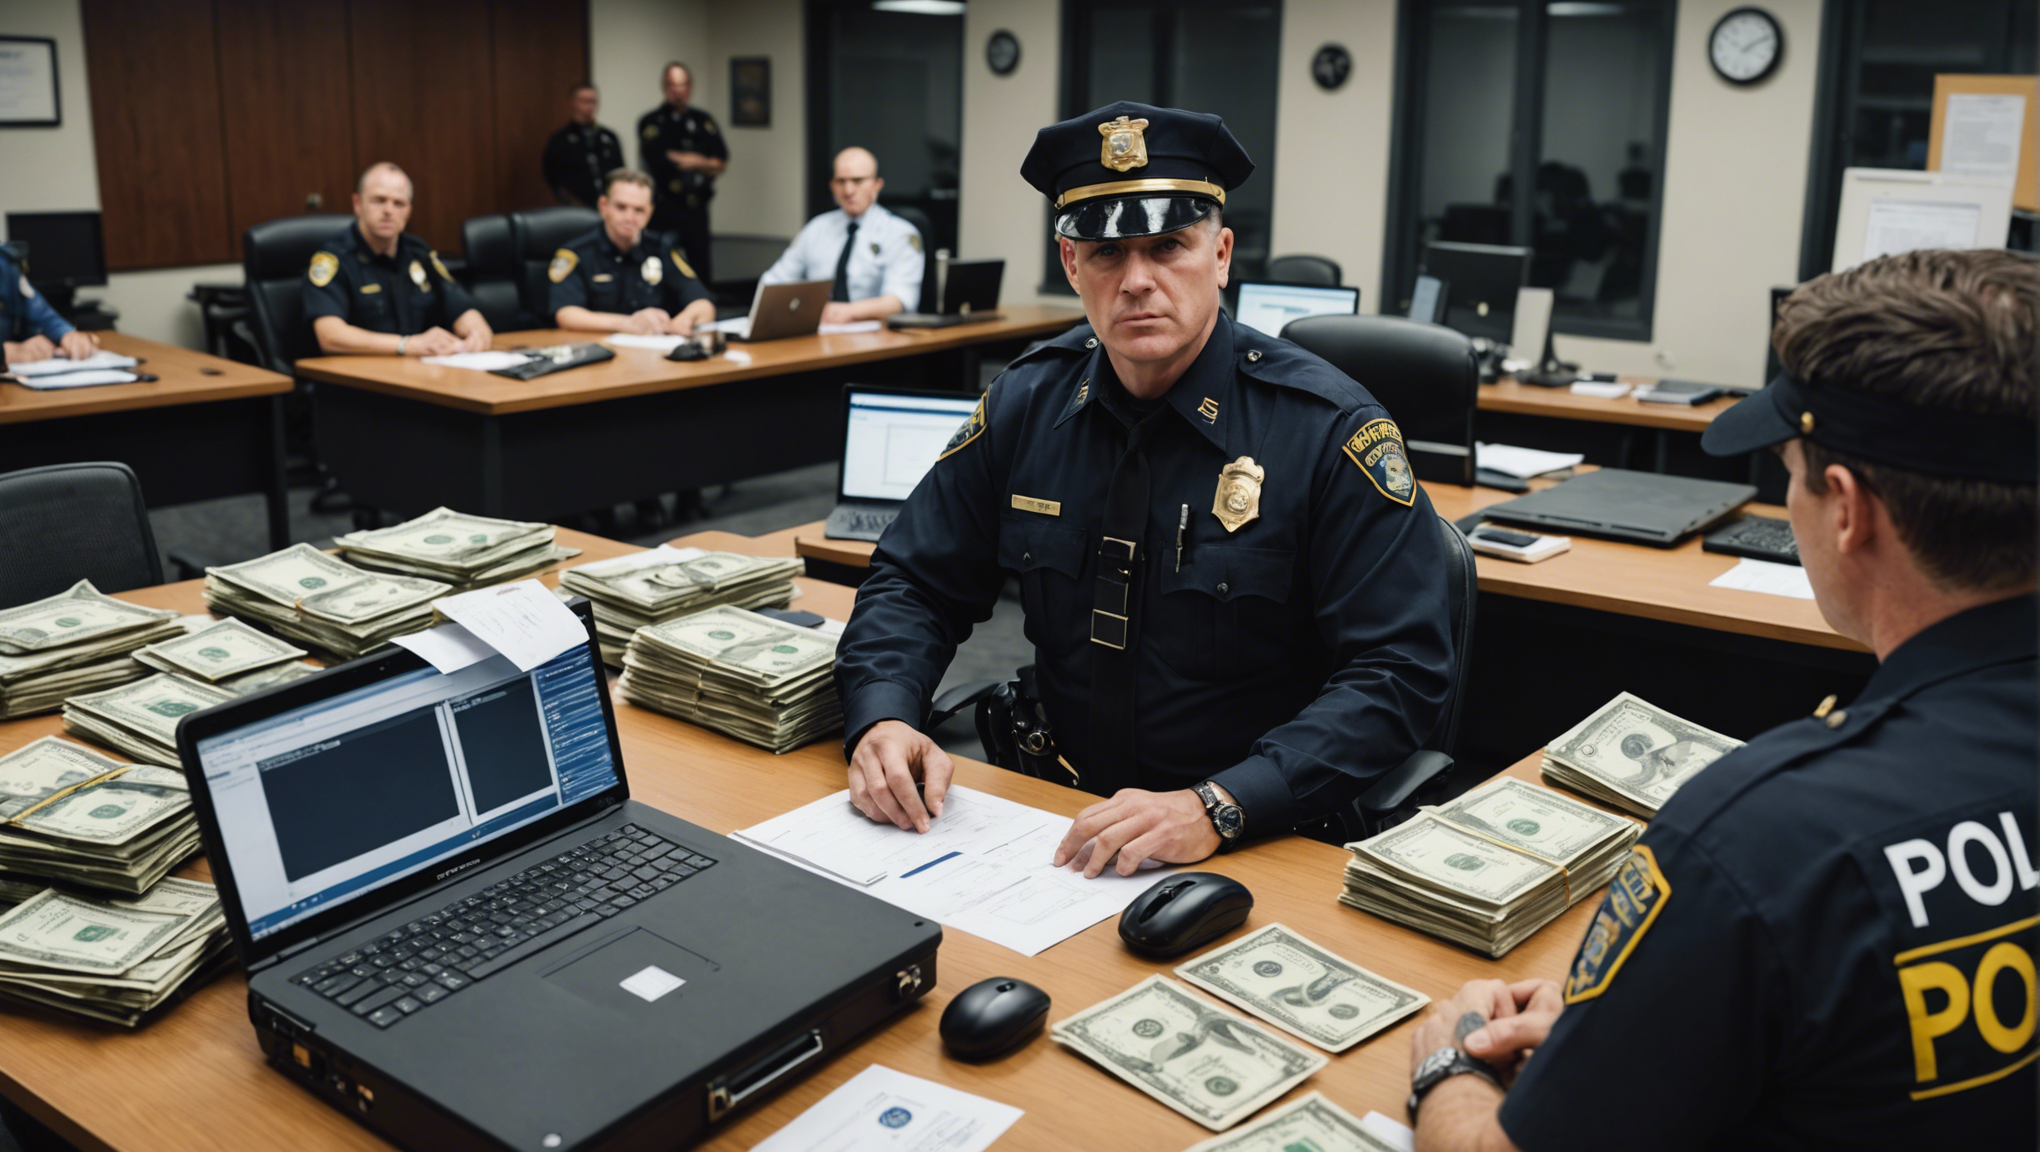 les agences de police récupèrent des millions de dollars volés lors de fraudes en ligne. découvrez comment les forces de l'ordre luttent contre la cybercriminalité pour protéger les citoyens et les entreprises.